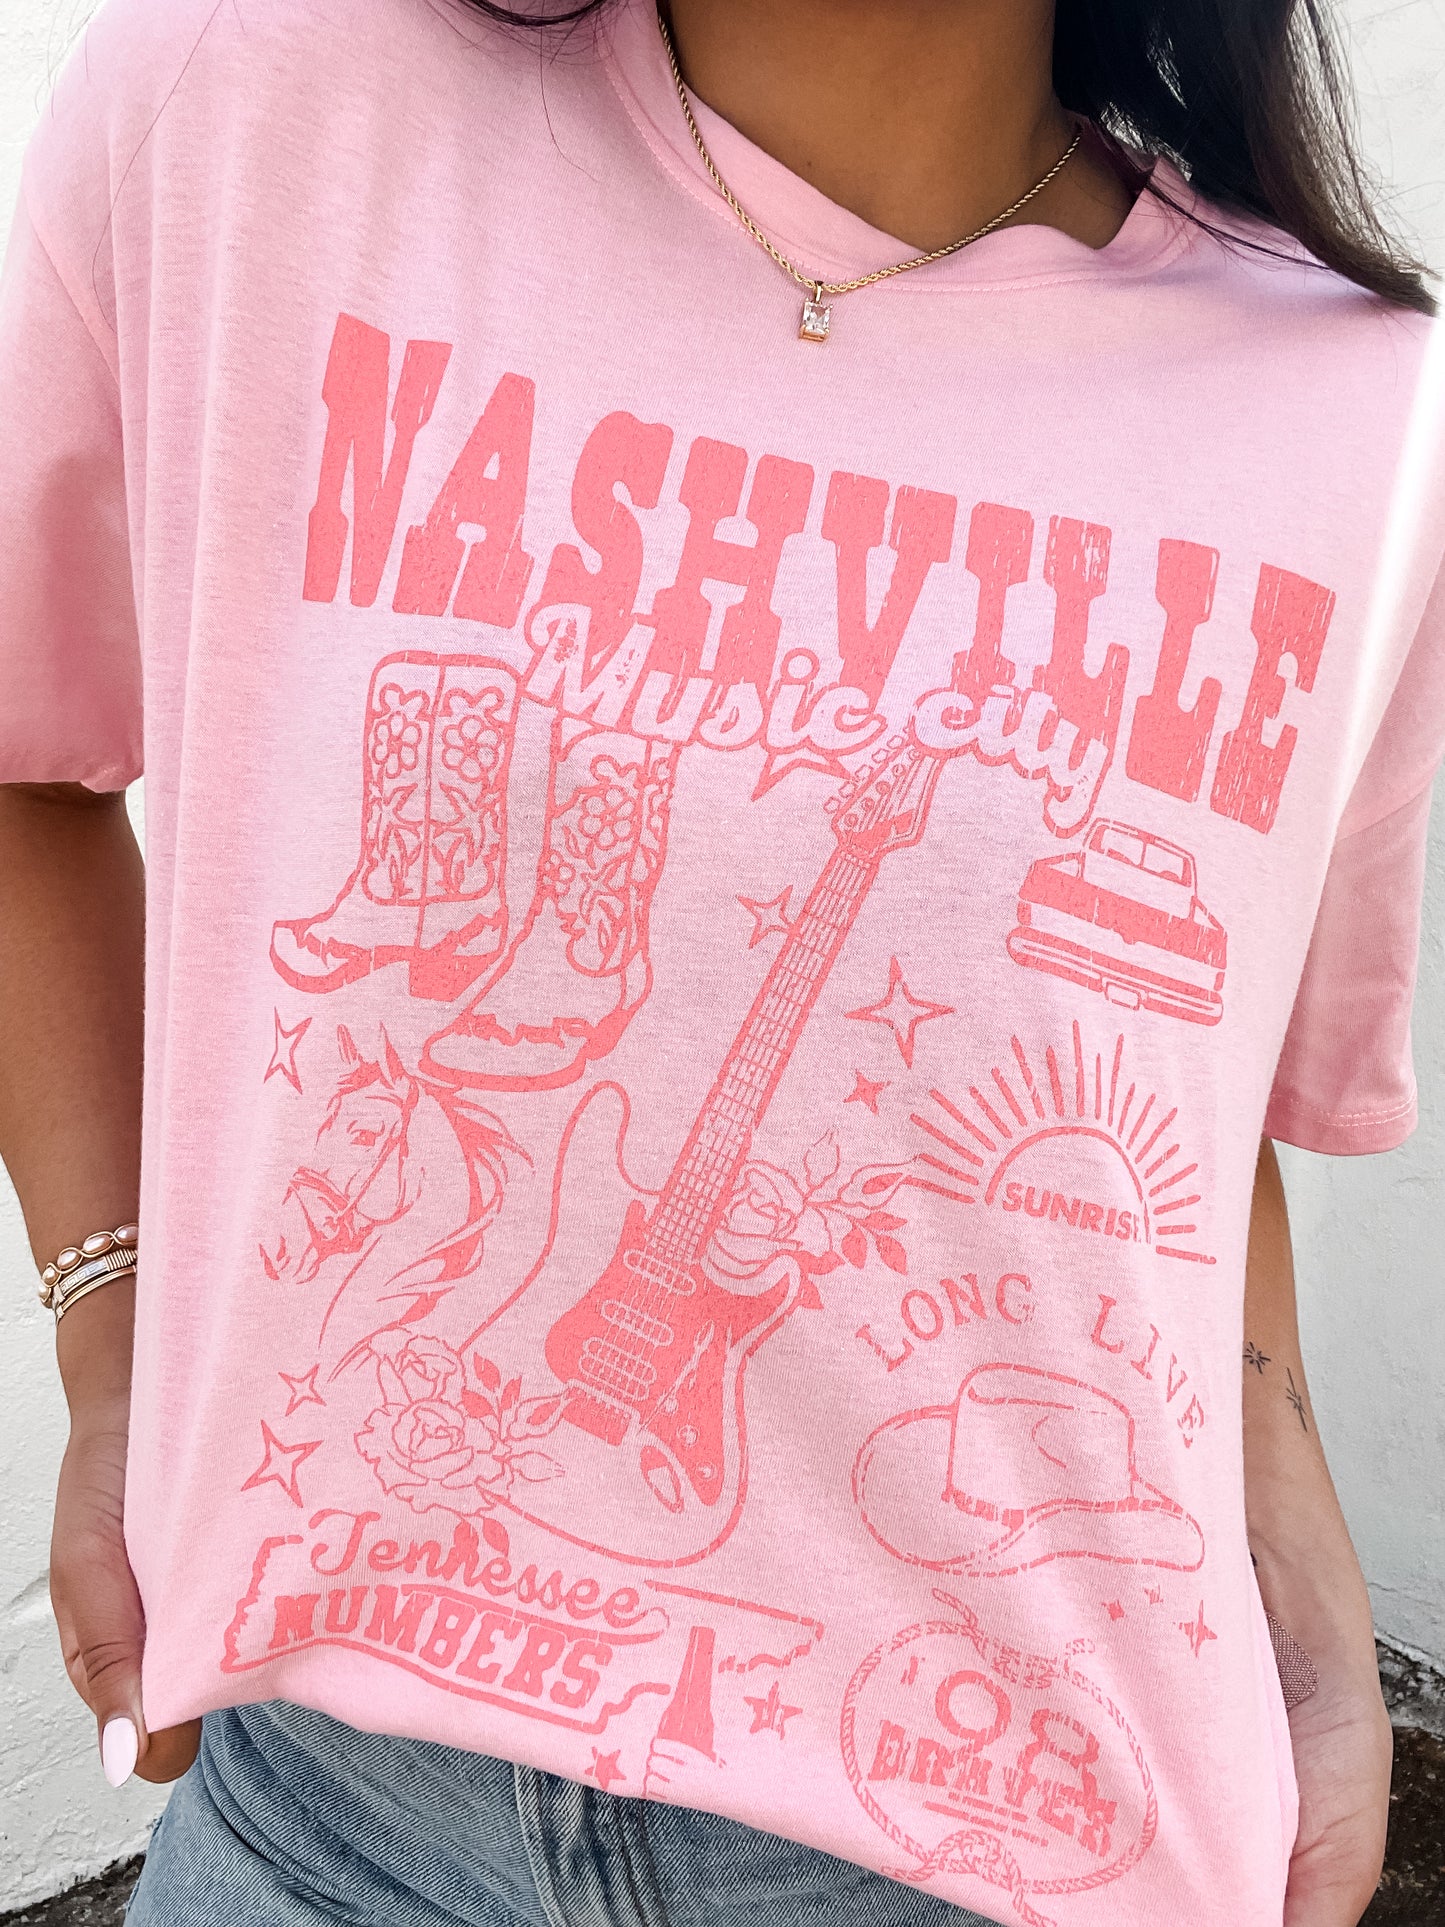 Nashville Music City Tee Pink